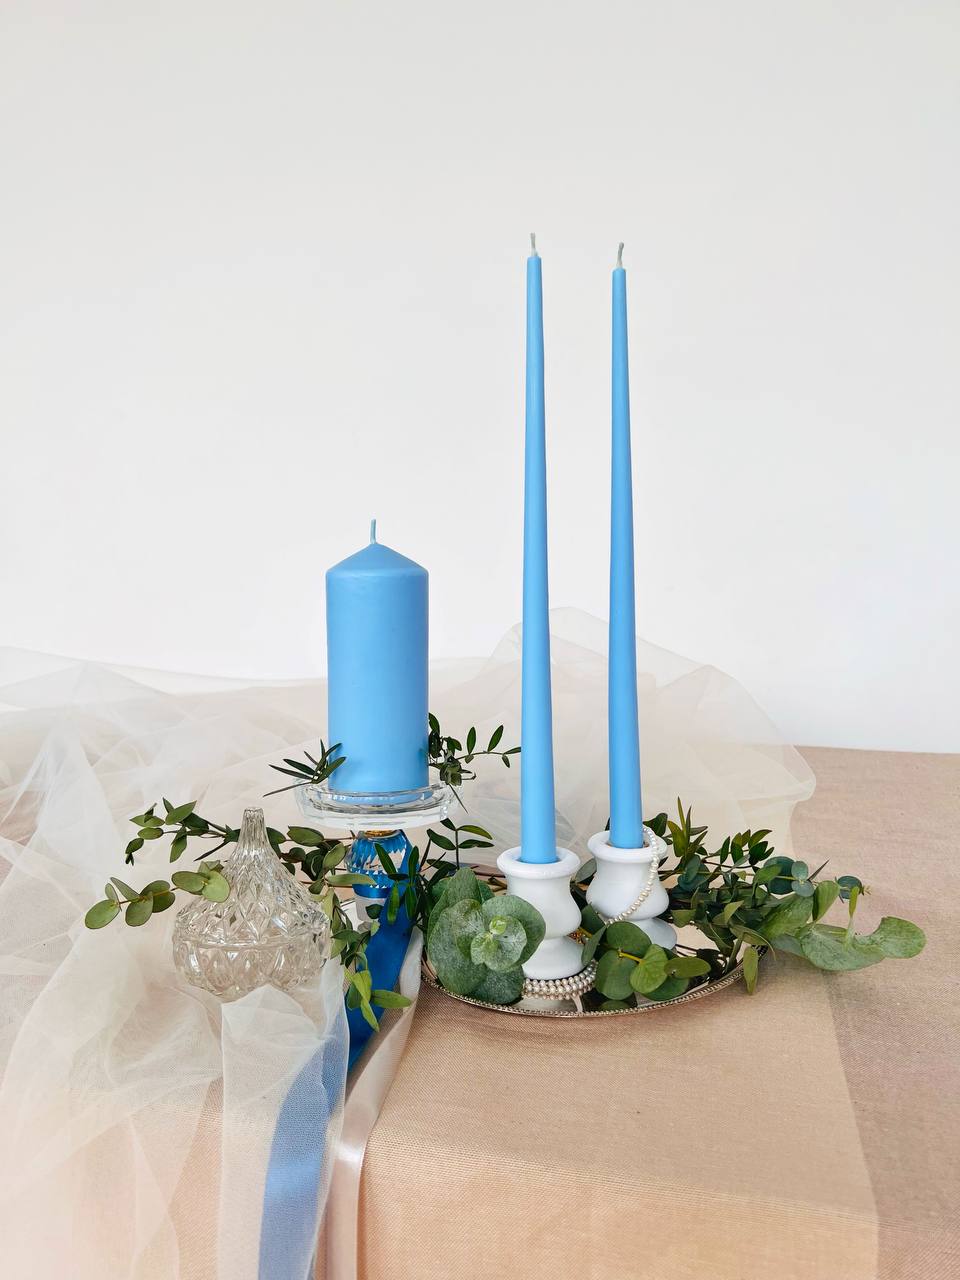 Набор свечей "Свадебный Очаг". Под заказ выполняем в любом цвете. Свечи из кокосового воска имеют матовую поверхность, поэтому красиво смотрятся на фото. Каждая свеча в индивидуальной упаковке, чтобы было удобно забрать после праздника.